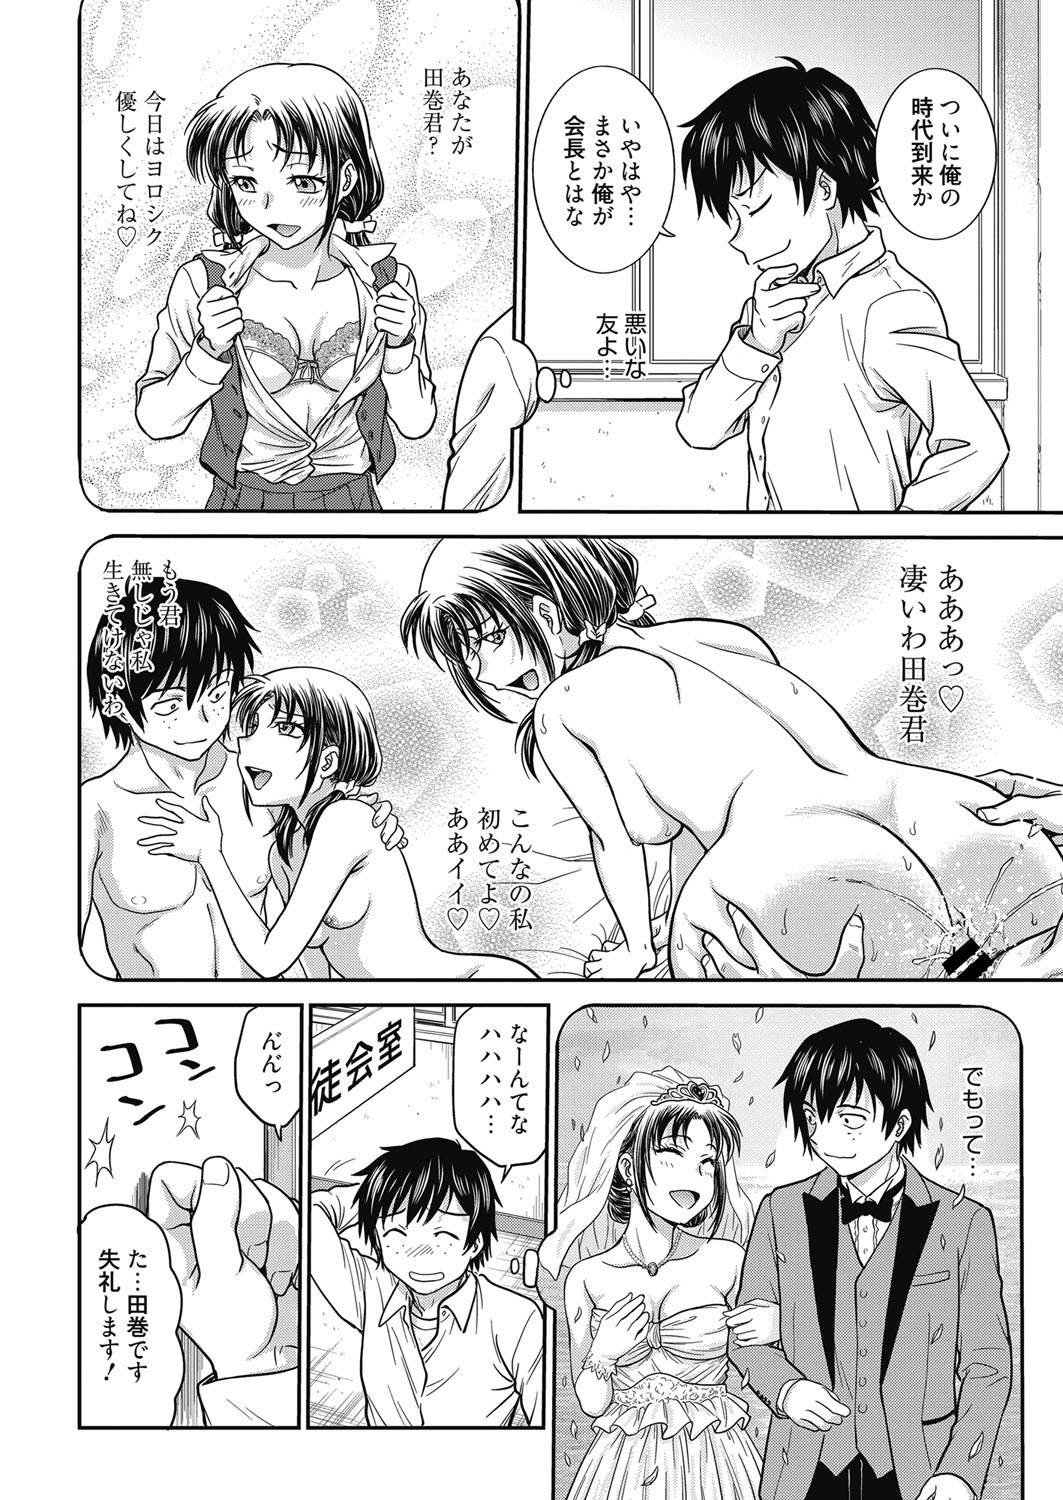 Web Manga Bangaichi Vol. 24 page 5 full